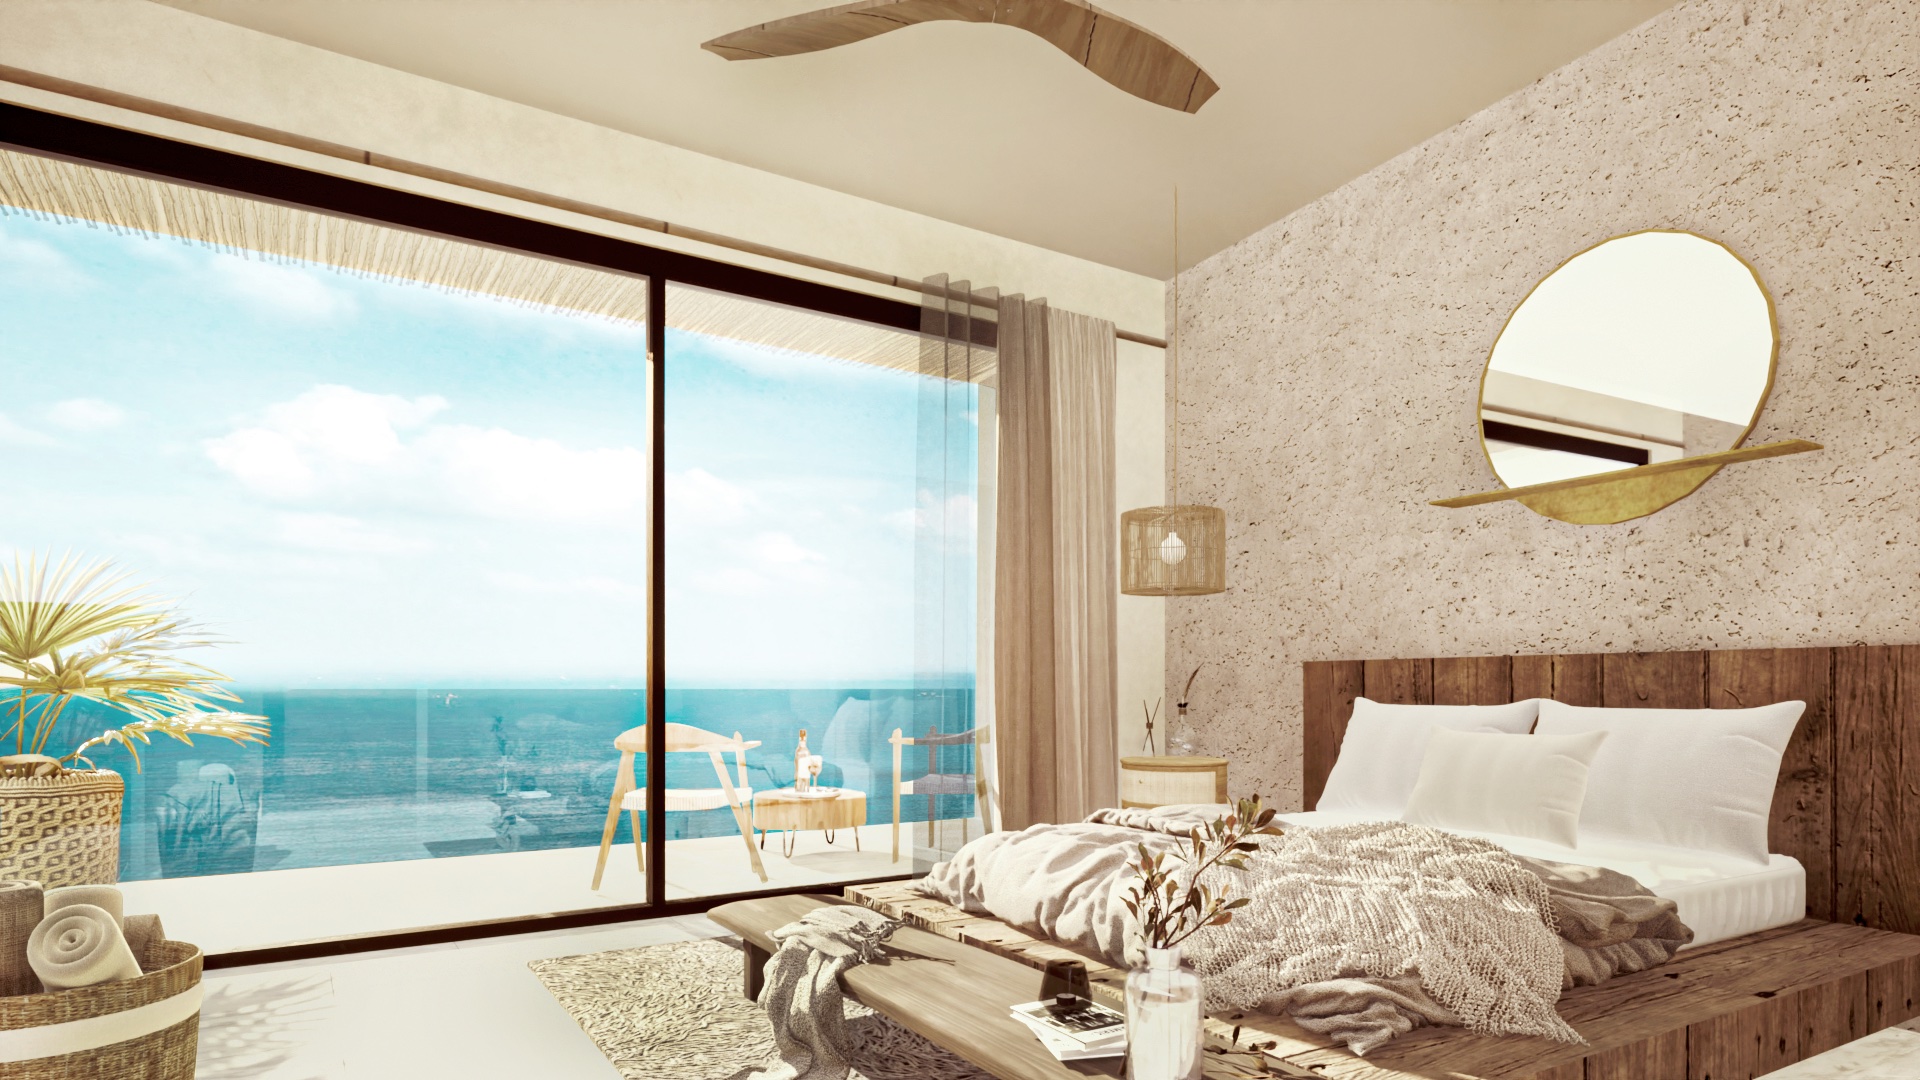 c luxury 4 bedroom condo with ocean view in tulum 041a bedroom